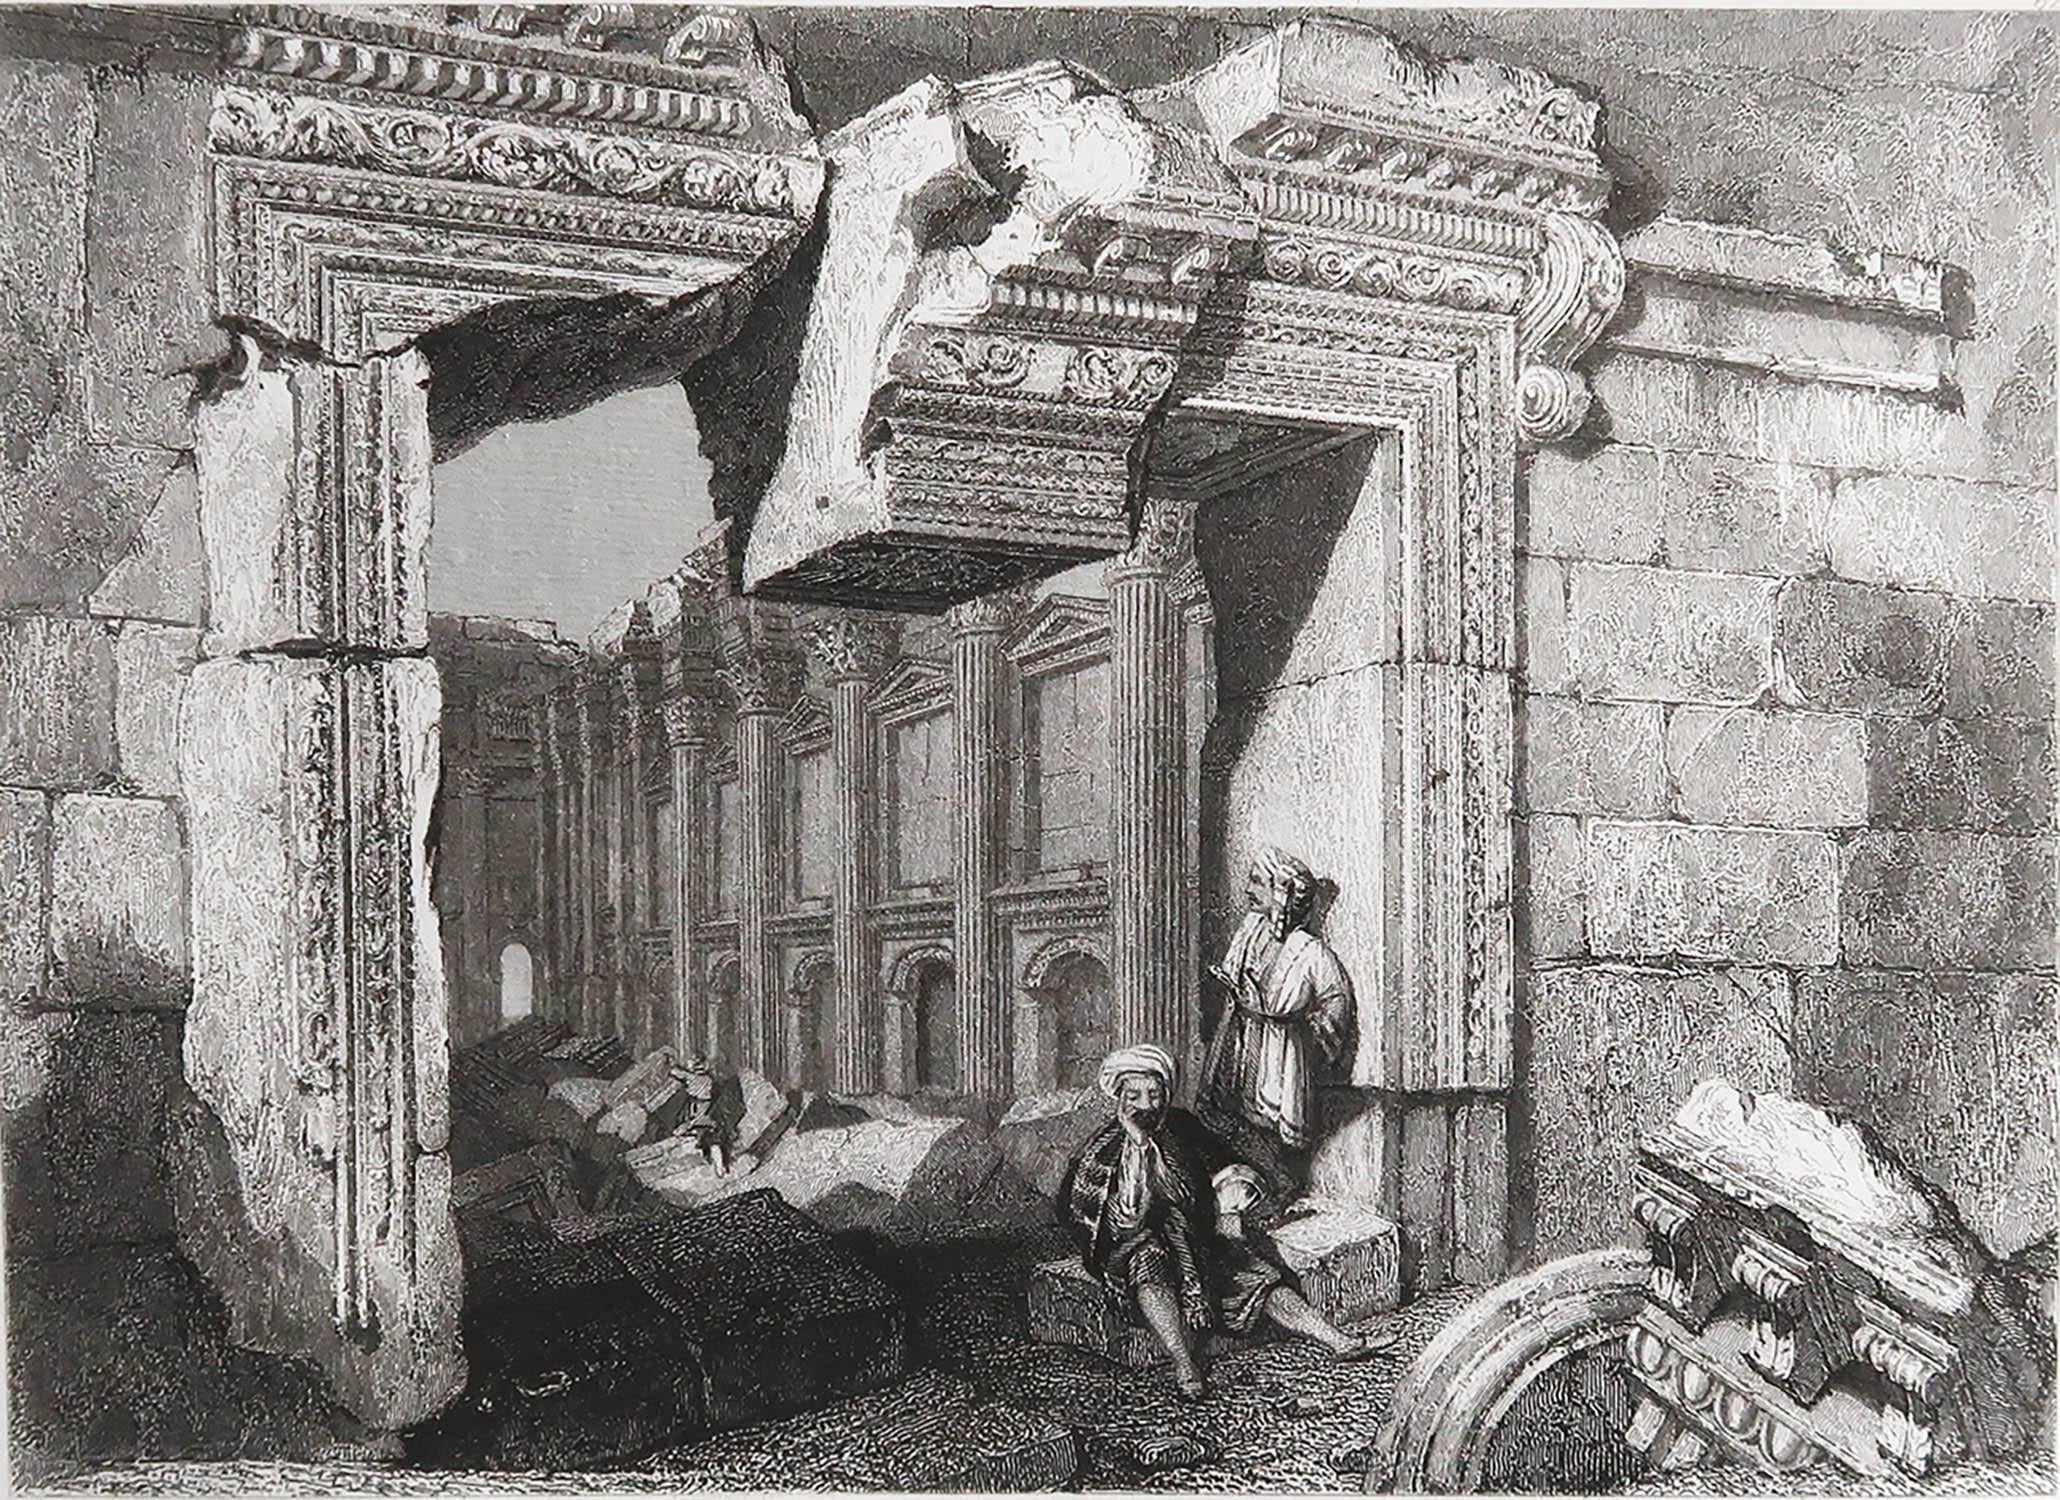 Wunderschönes Bild des Tempels von Baalbek Tor

Feiner Stahlstich von Finden nach C.Stanfield

Veröffentlicht von Murray. Datiert 1835

Ungerahmt.

